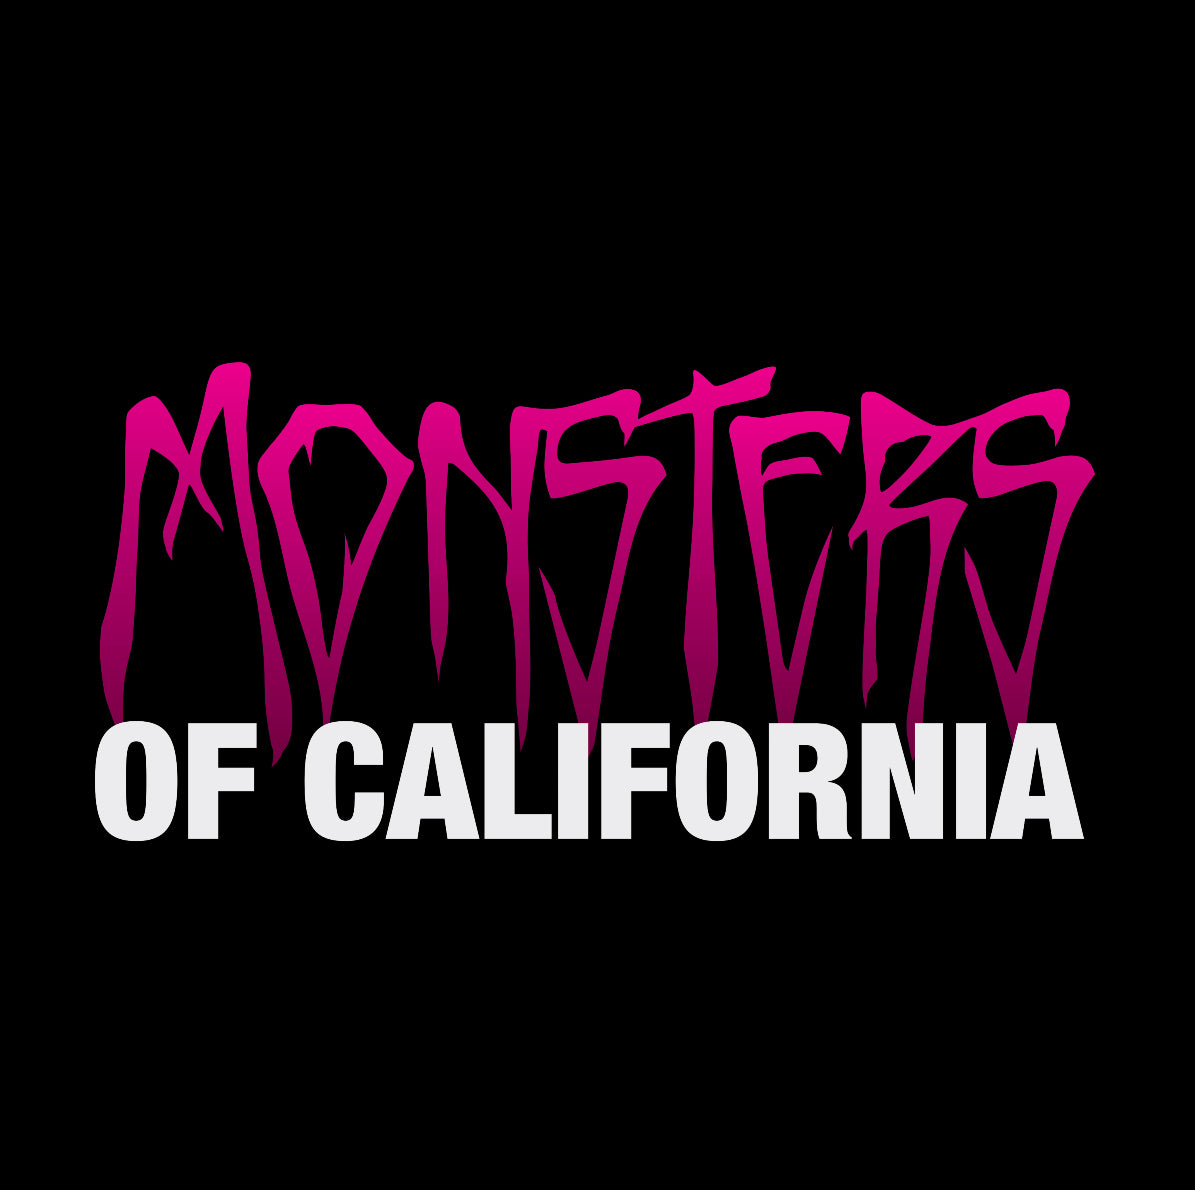 Tom DeLonge's 'Monsters of California' Is So Blink-182